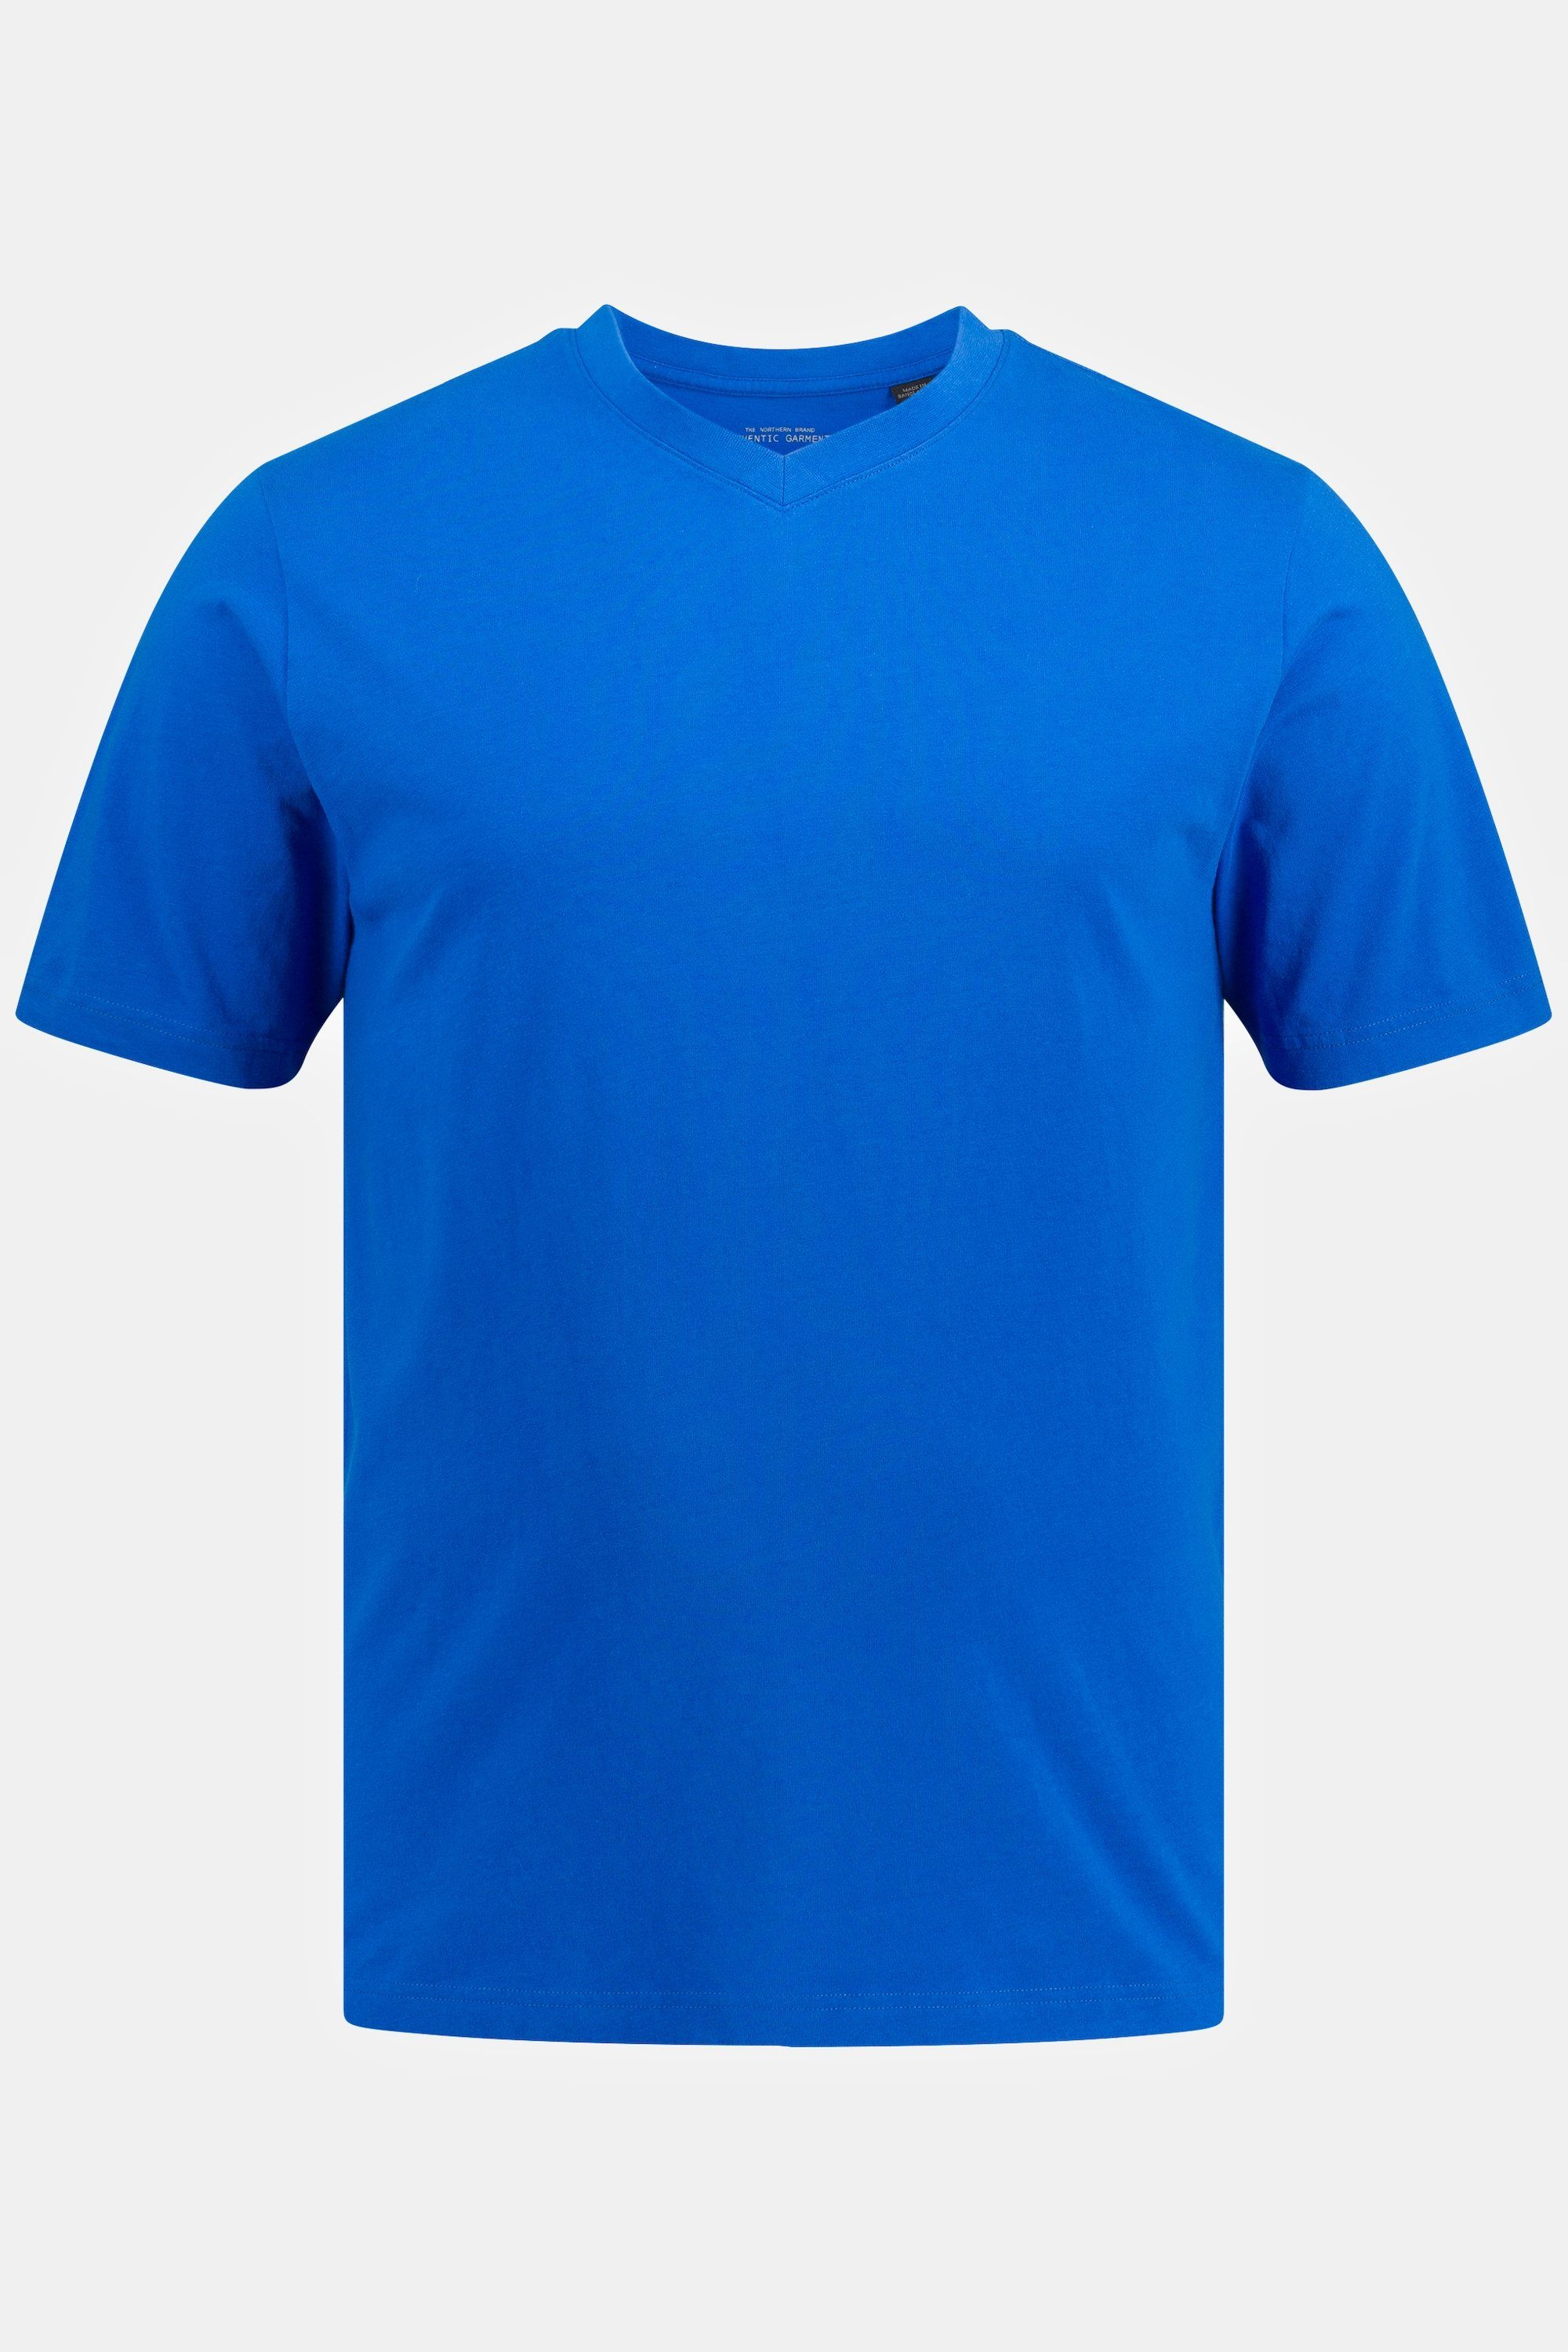 V-Ausschnitt 8XL T-Shirt JP1880 T-Shirt Basic blau bis